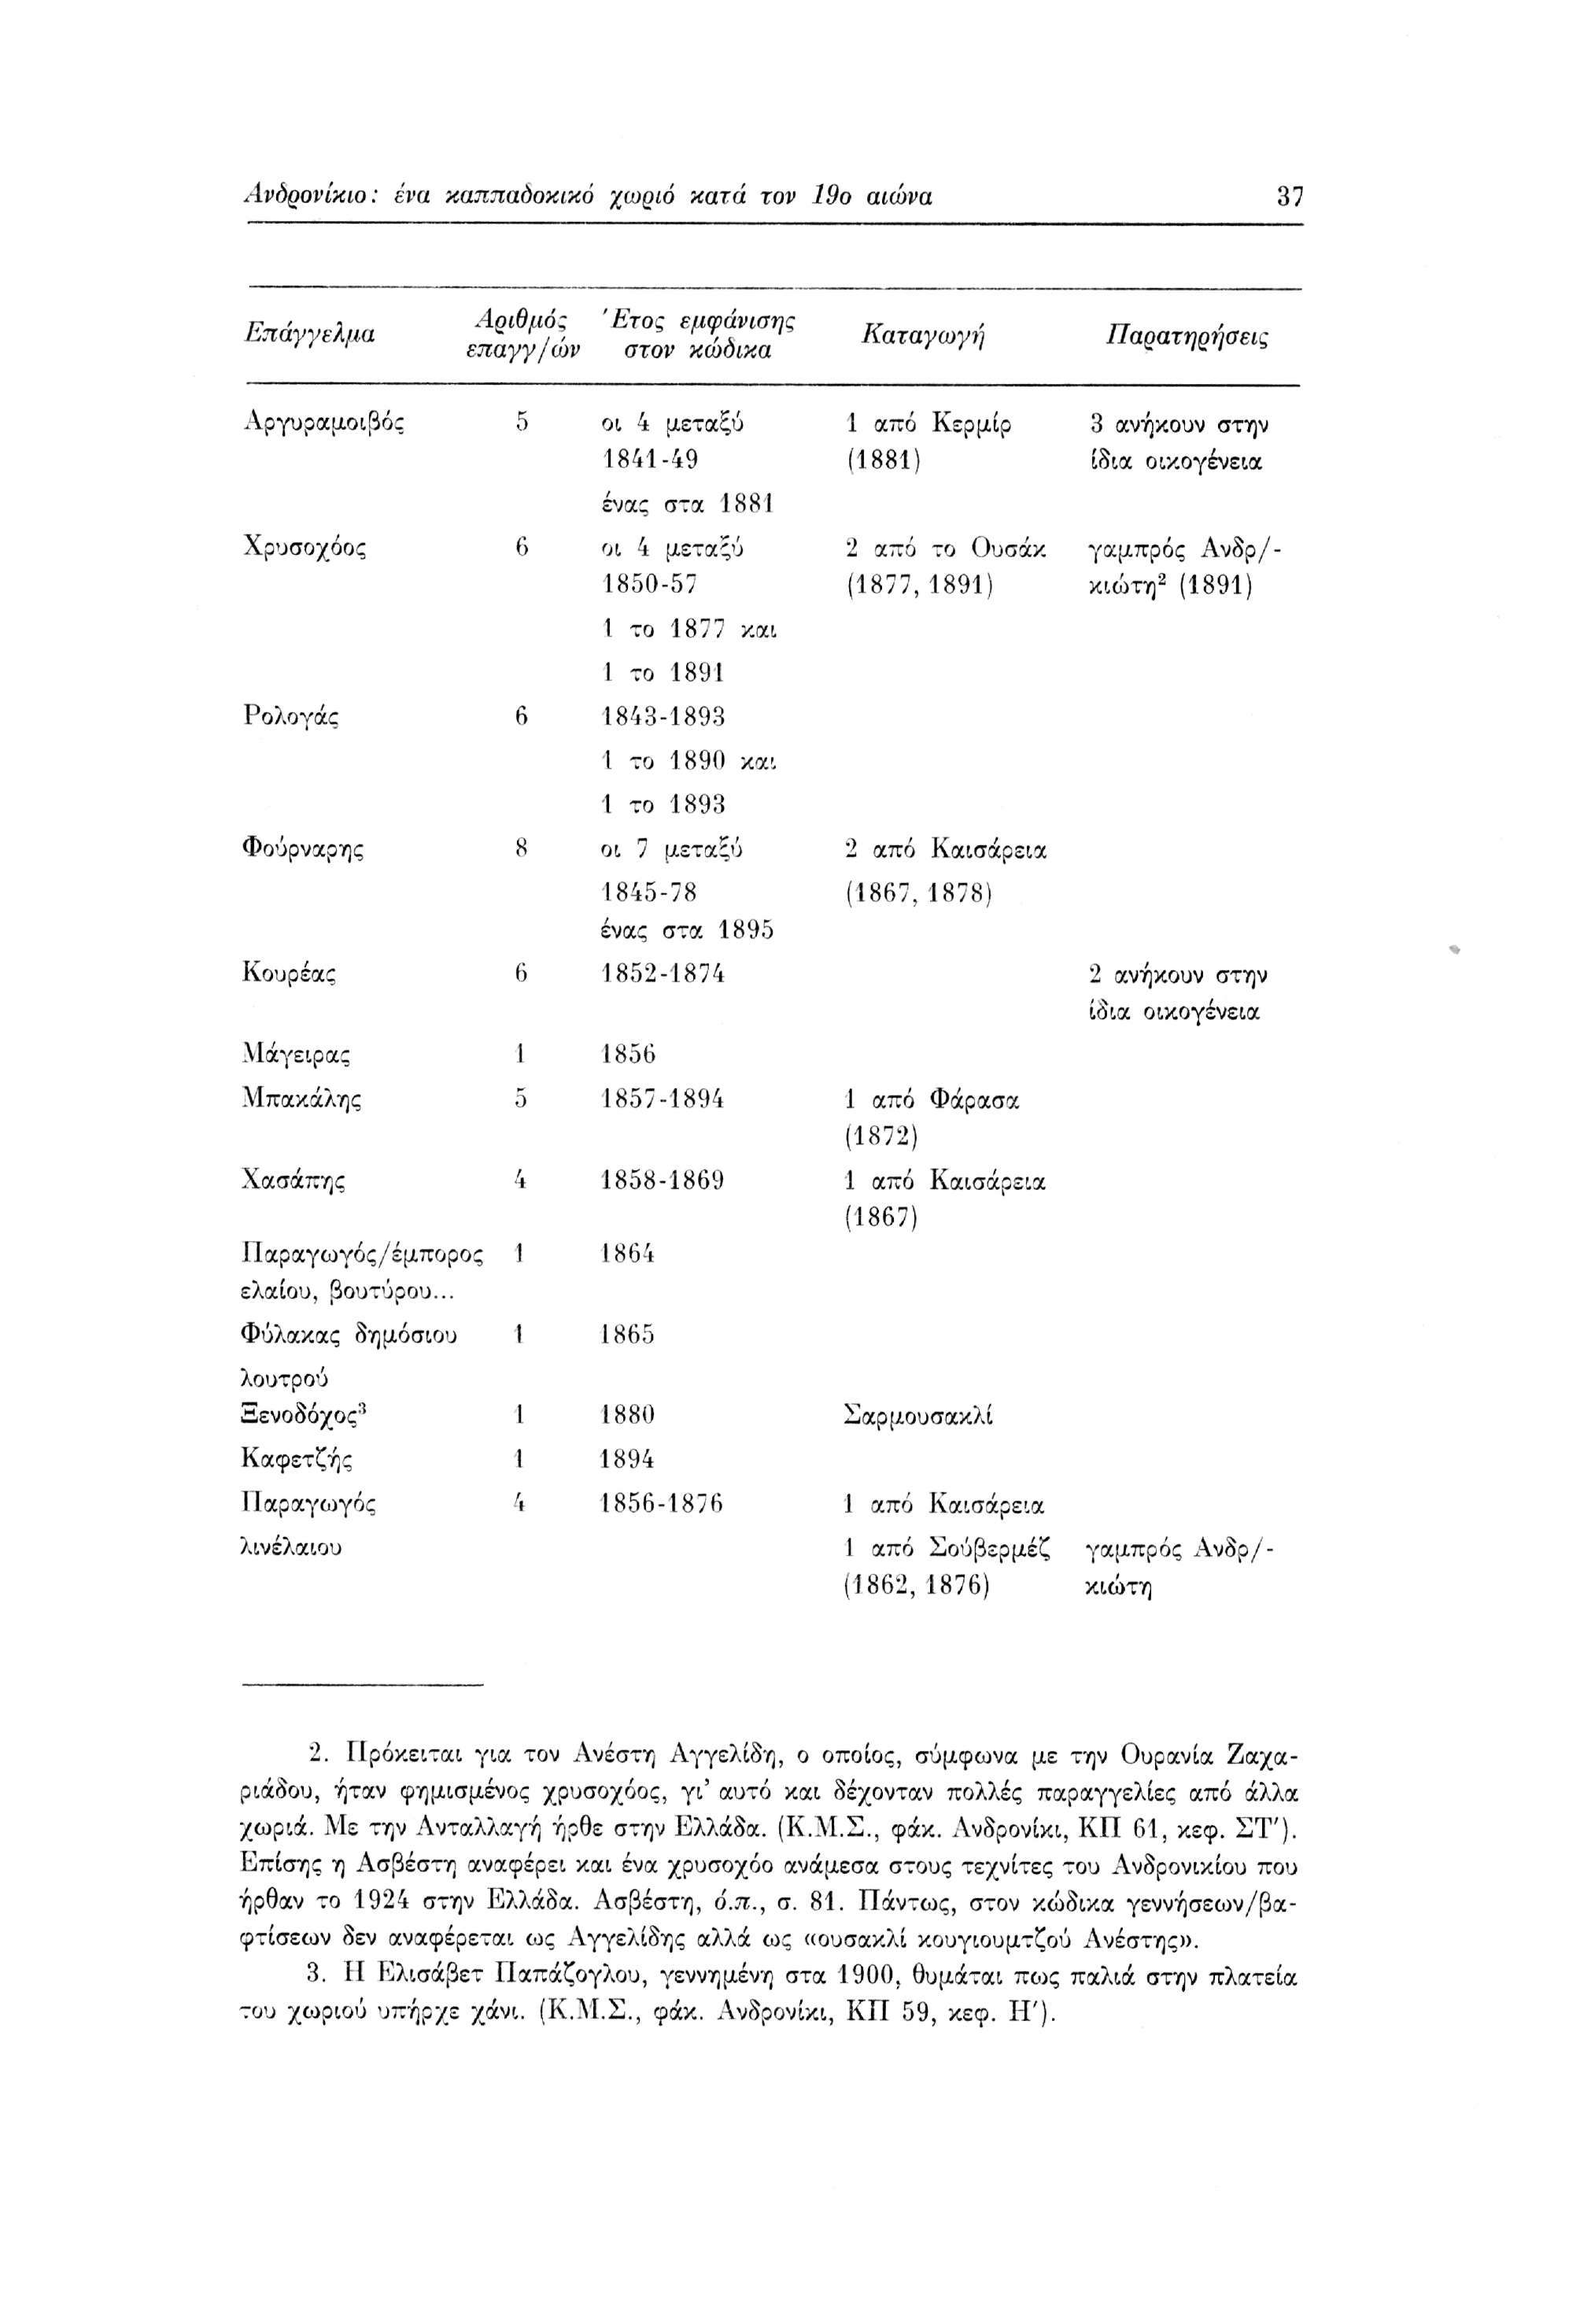 Λνορονίκιο : ένα καππαοοκικό χωρώ κατά τον 19ο αιώνα 37 Επάγγελμα Αριθμό; επαγγ/ών Έτος στον εμφάνισης κώοικα Καταγωγή Παρατηρήσεις Αργυραμοιβός 5 οι 4 μεταξύ 1841-49 1 από Κερμίρ (1881) 3 ανήκουν